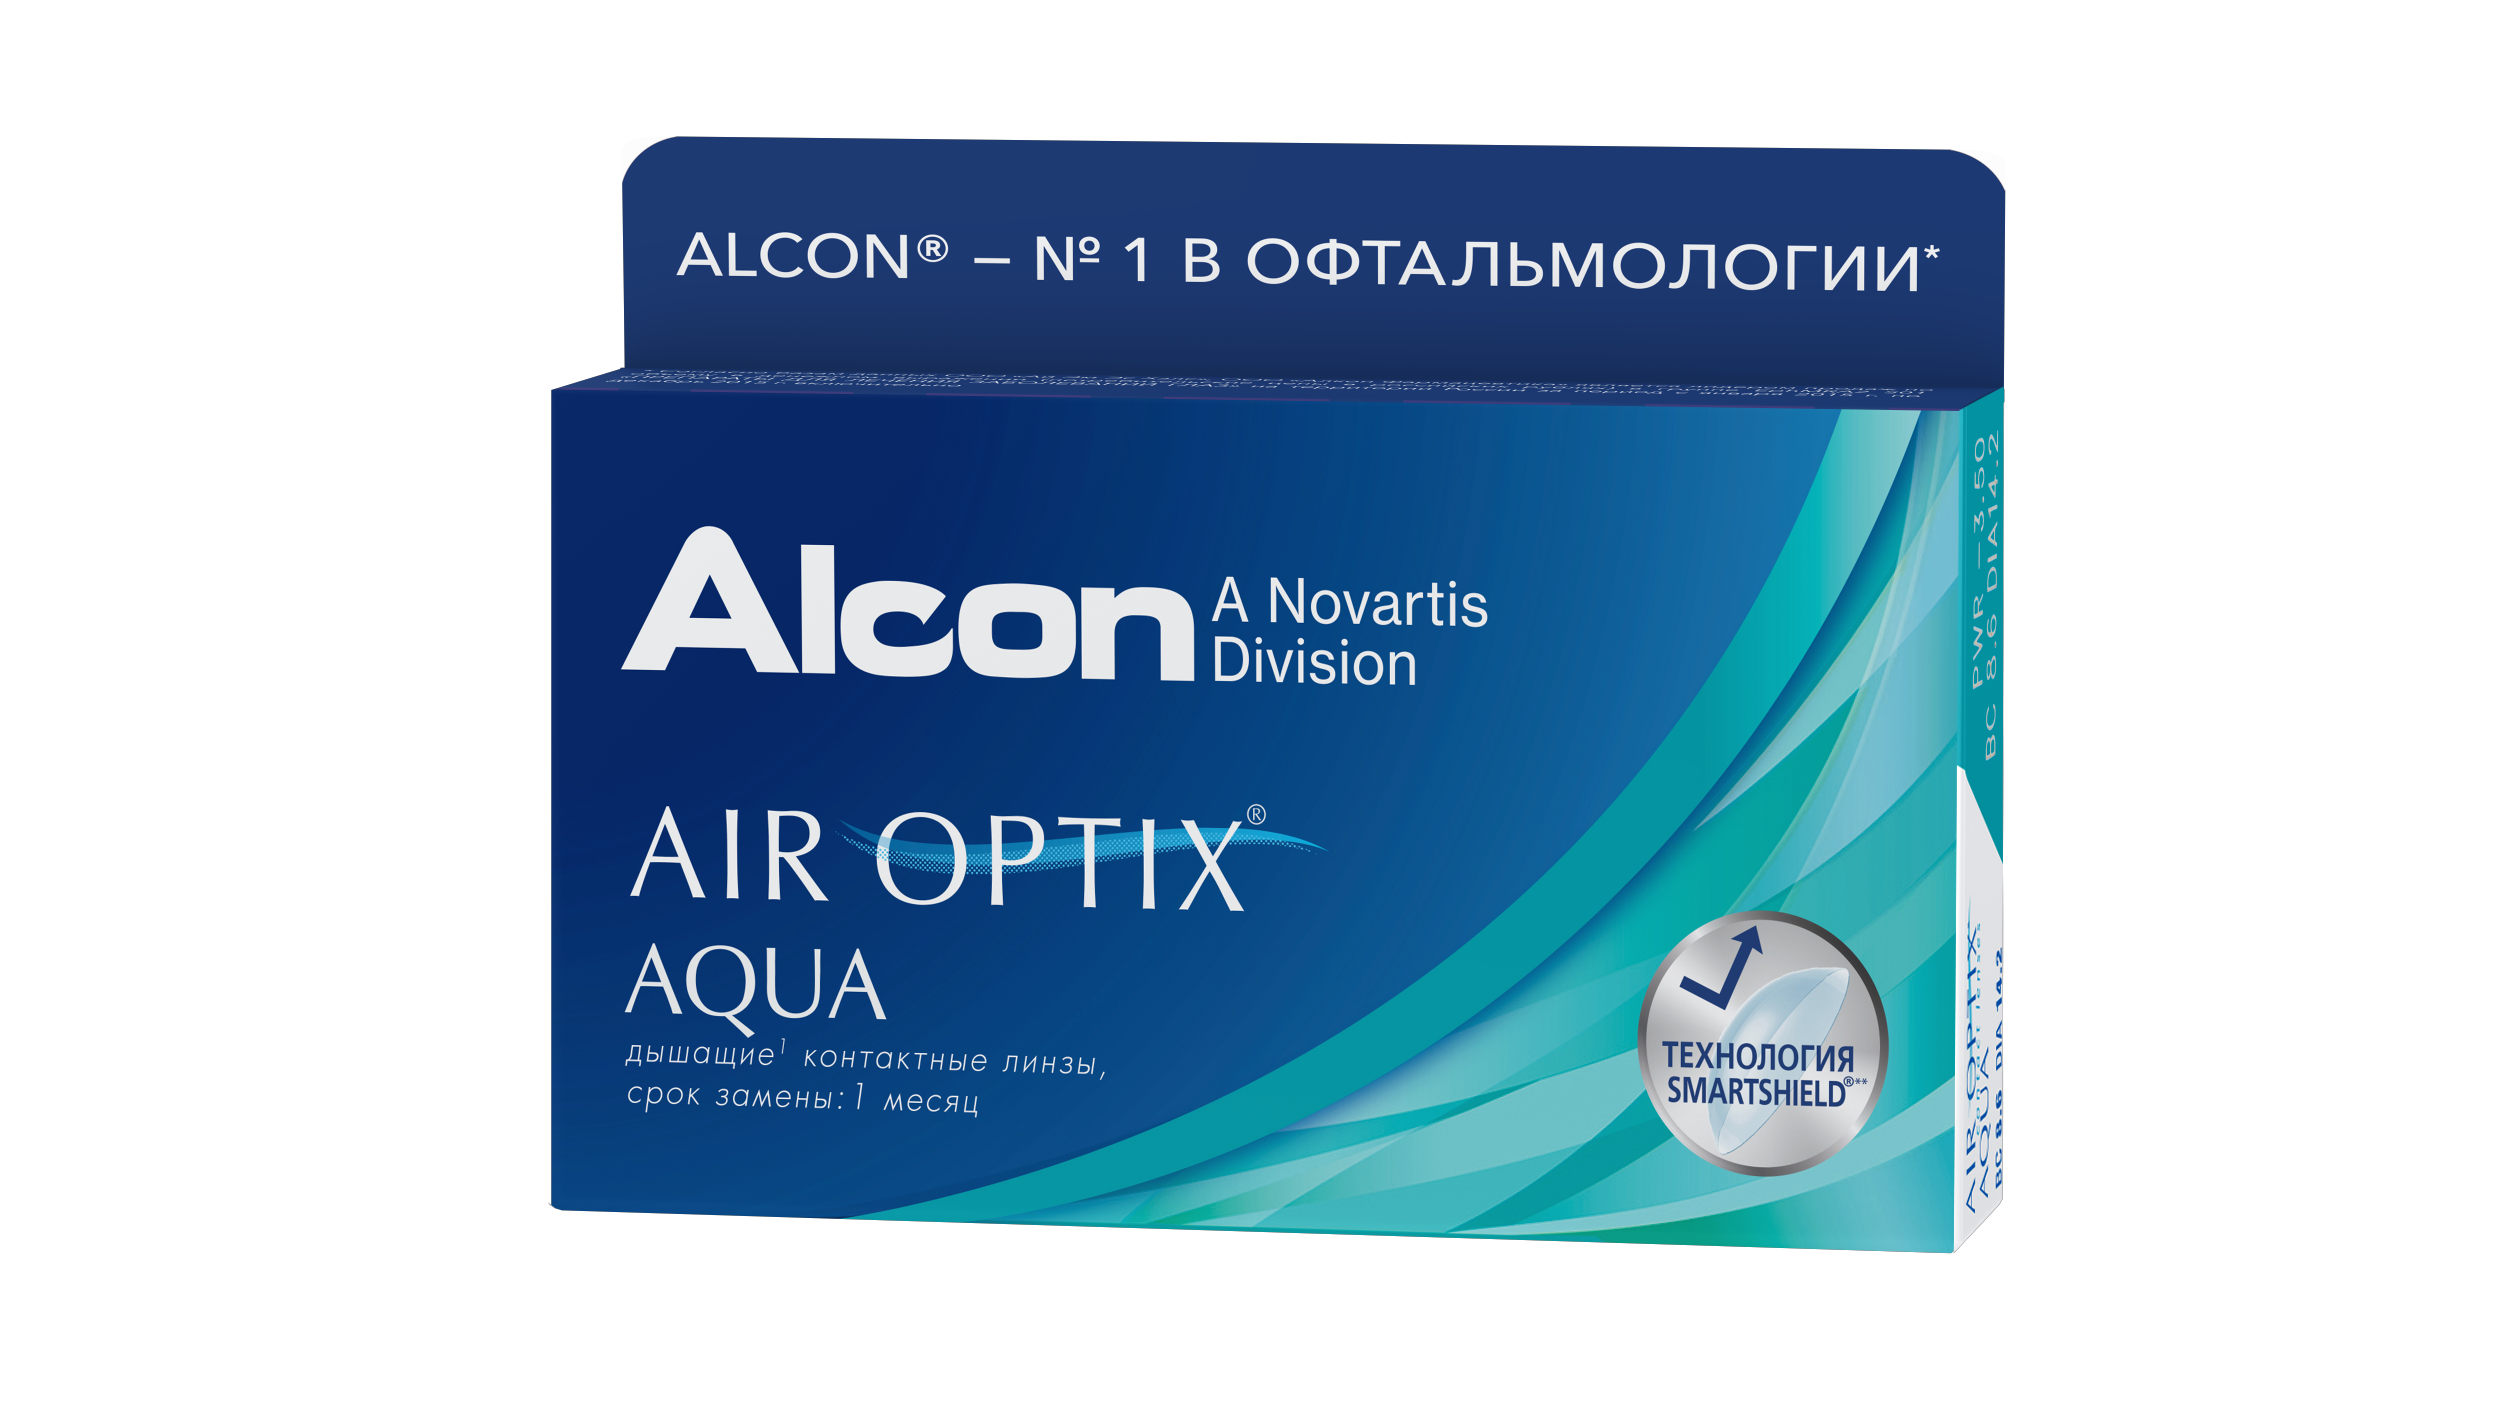 Alcon day night. Air Optix Aqua (6 линз). Air Optix (Alcon) Plus HYDRAGLYDE (3 линзы). Линзы Alcon Air Optix Plus HYDRAGLYDE. Линзы Alcon Air Optix for Astigmatism.